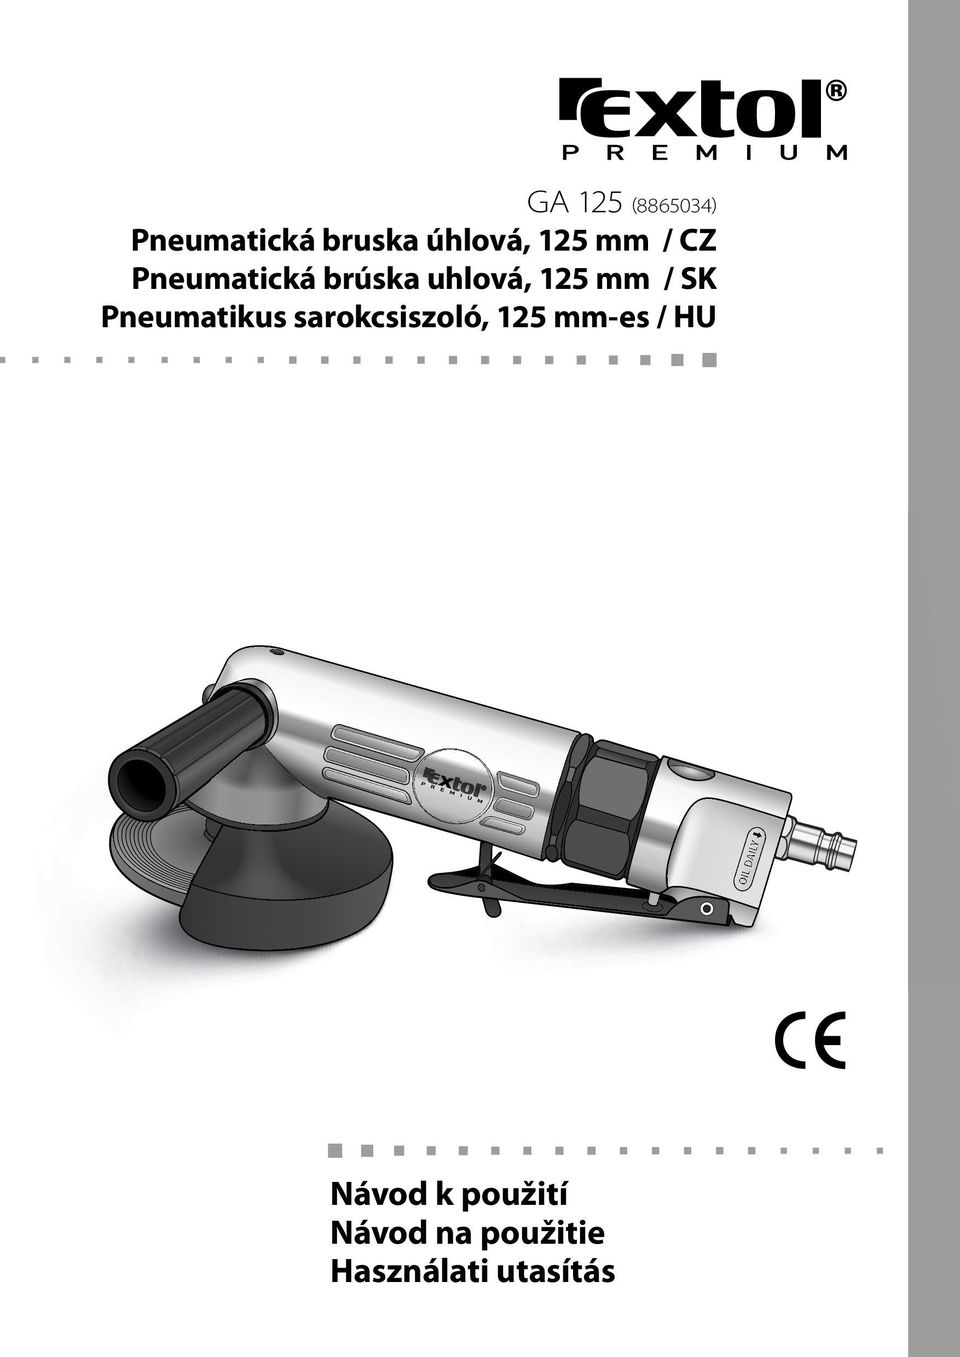 Pneumatikus sarokcsiszoló, 5 mm-es / návod k